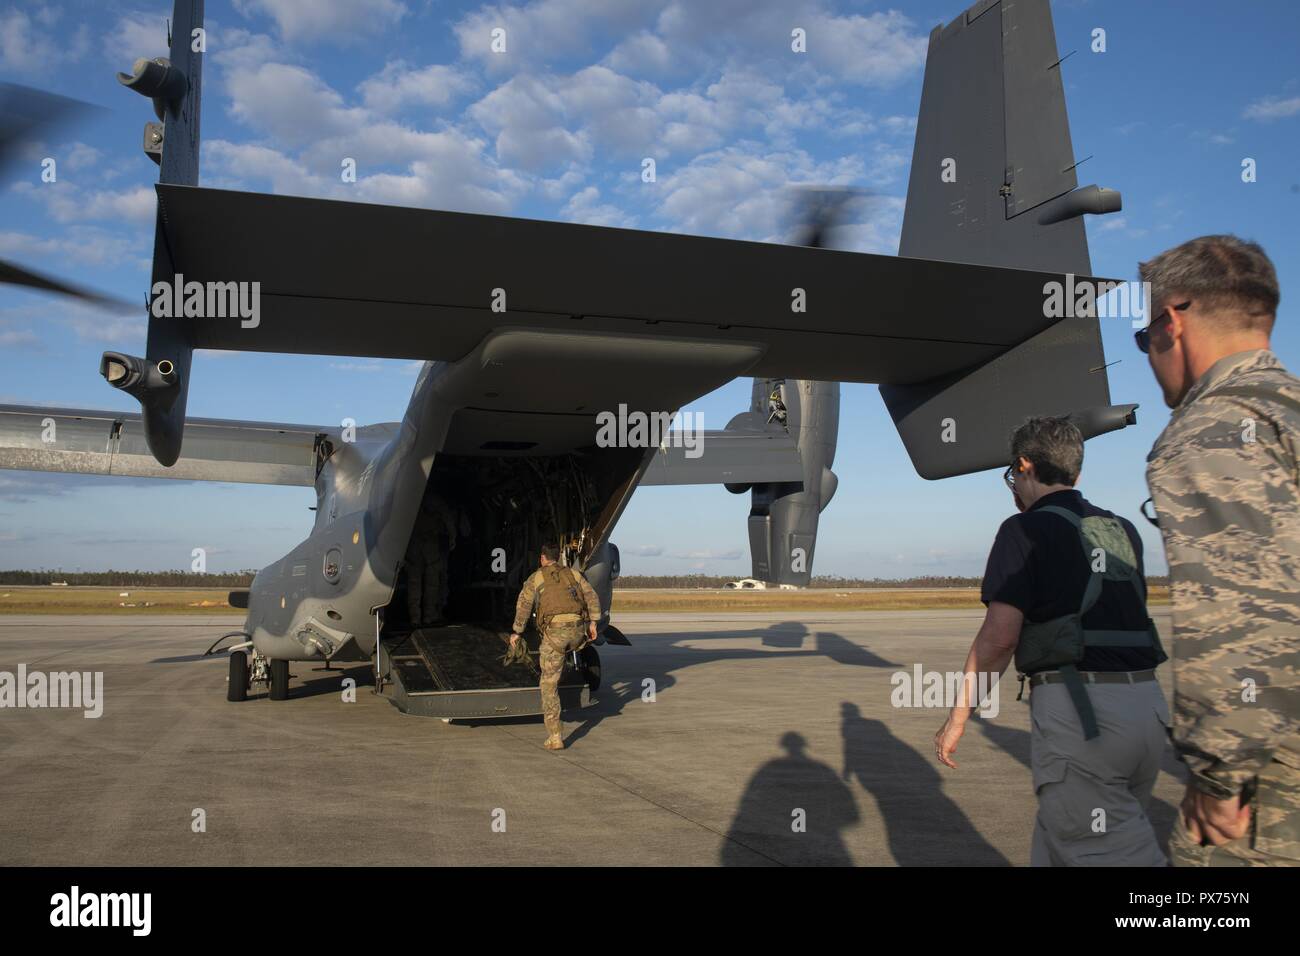 Secrétaire de l'Armée de l'air droit, Heather Wilson, mesures pour un CV-22 Osprey avion à rotors basculants à la base aérienne Tyndall, en Floride, le 14 octobre 2018, 14 octobre 2018. Les hauts dirigeants de l'Armée de l'air a visité la Base aérienne Tyndall pour évaluer les dommages de l'ouragan Michael, l'un des plus intenses les cyclones tropicaux à jamais frapper les États-Unis (É.-U. Photo de l'Armée de l'air par les cadres supérieurs d'un membre de la sélection) Joseph. () Banque D'Images